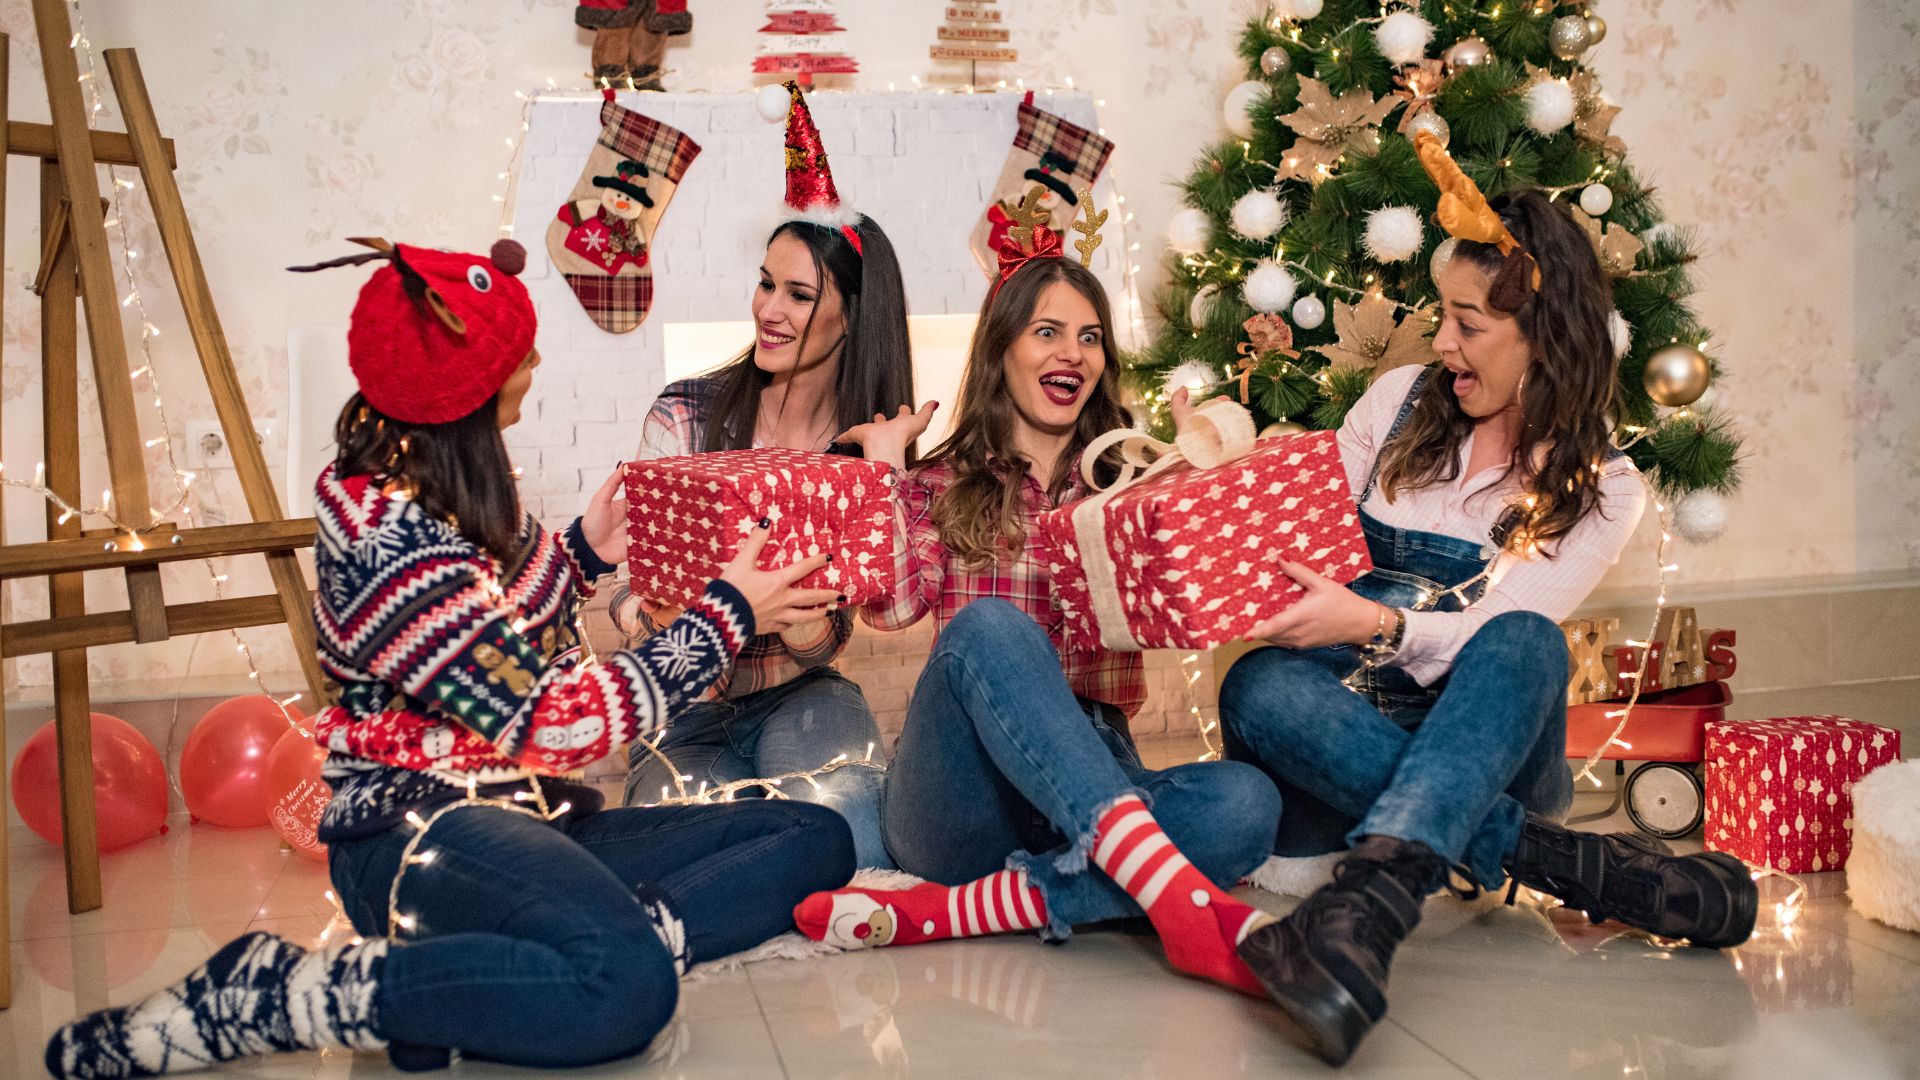 Imagem com elementos decoarativos de natal e 4 amigas sentadas no chão, usando tiaras temáticas e trocando presentes.